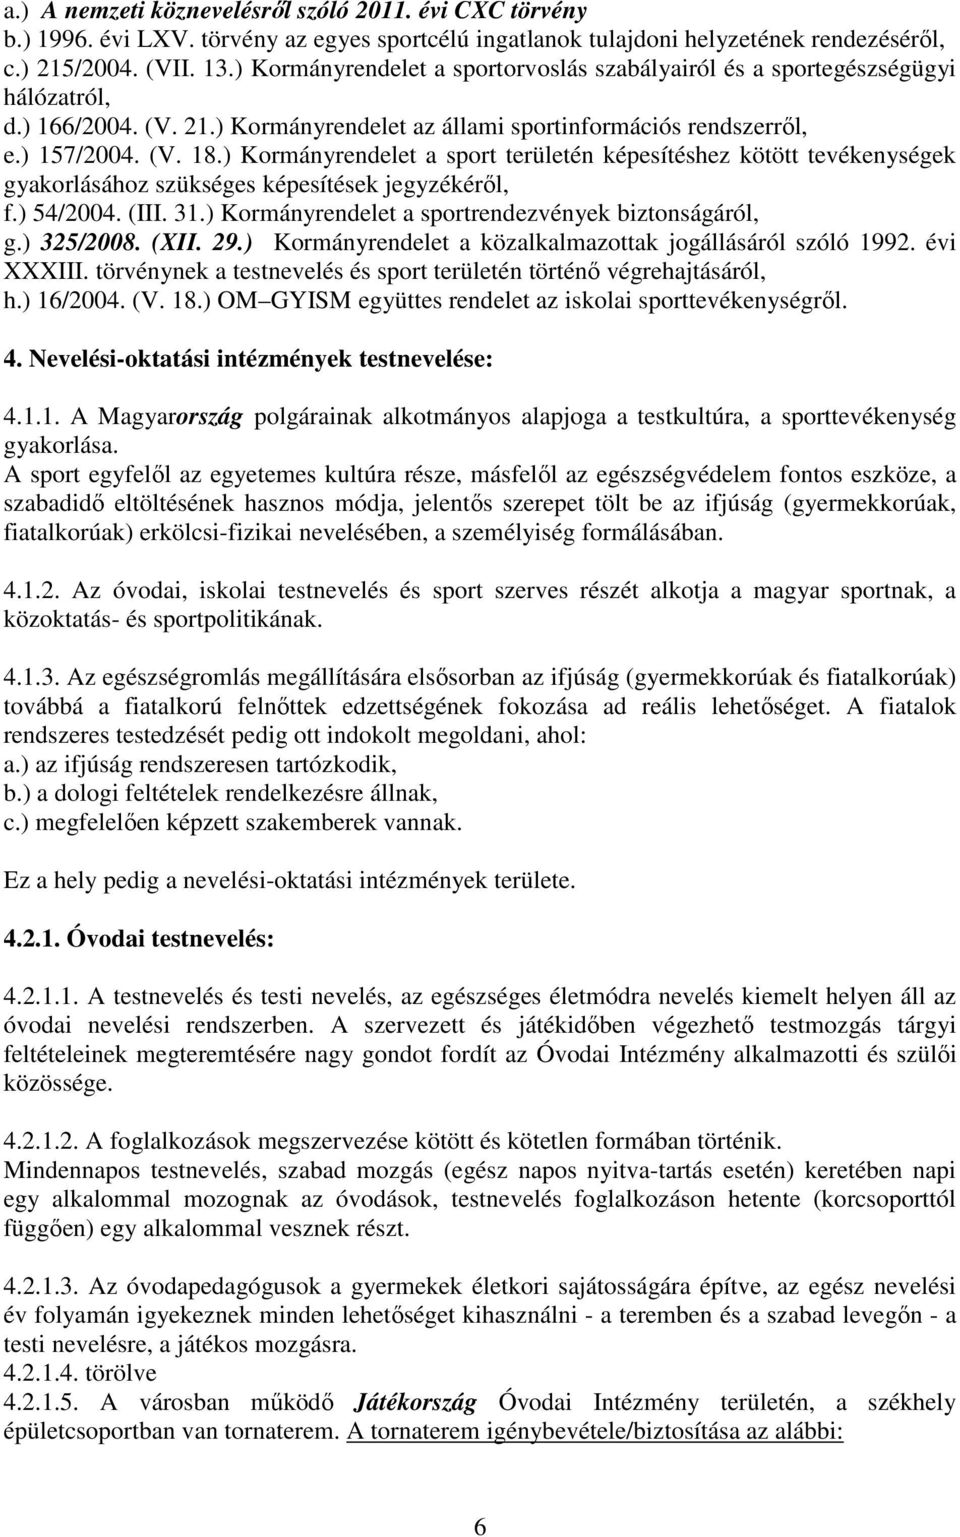 ) Kormányrendelet a sport területén képesítéshez kötött tevékenységek gyakorlásához szükséges képesítések jegyzékéről, f.) 54/2004. (III. 31.) Kormányrendelet a sportrendezvények biztonságáról, g.